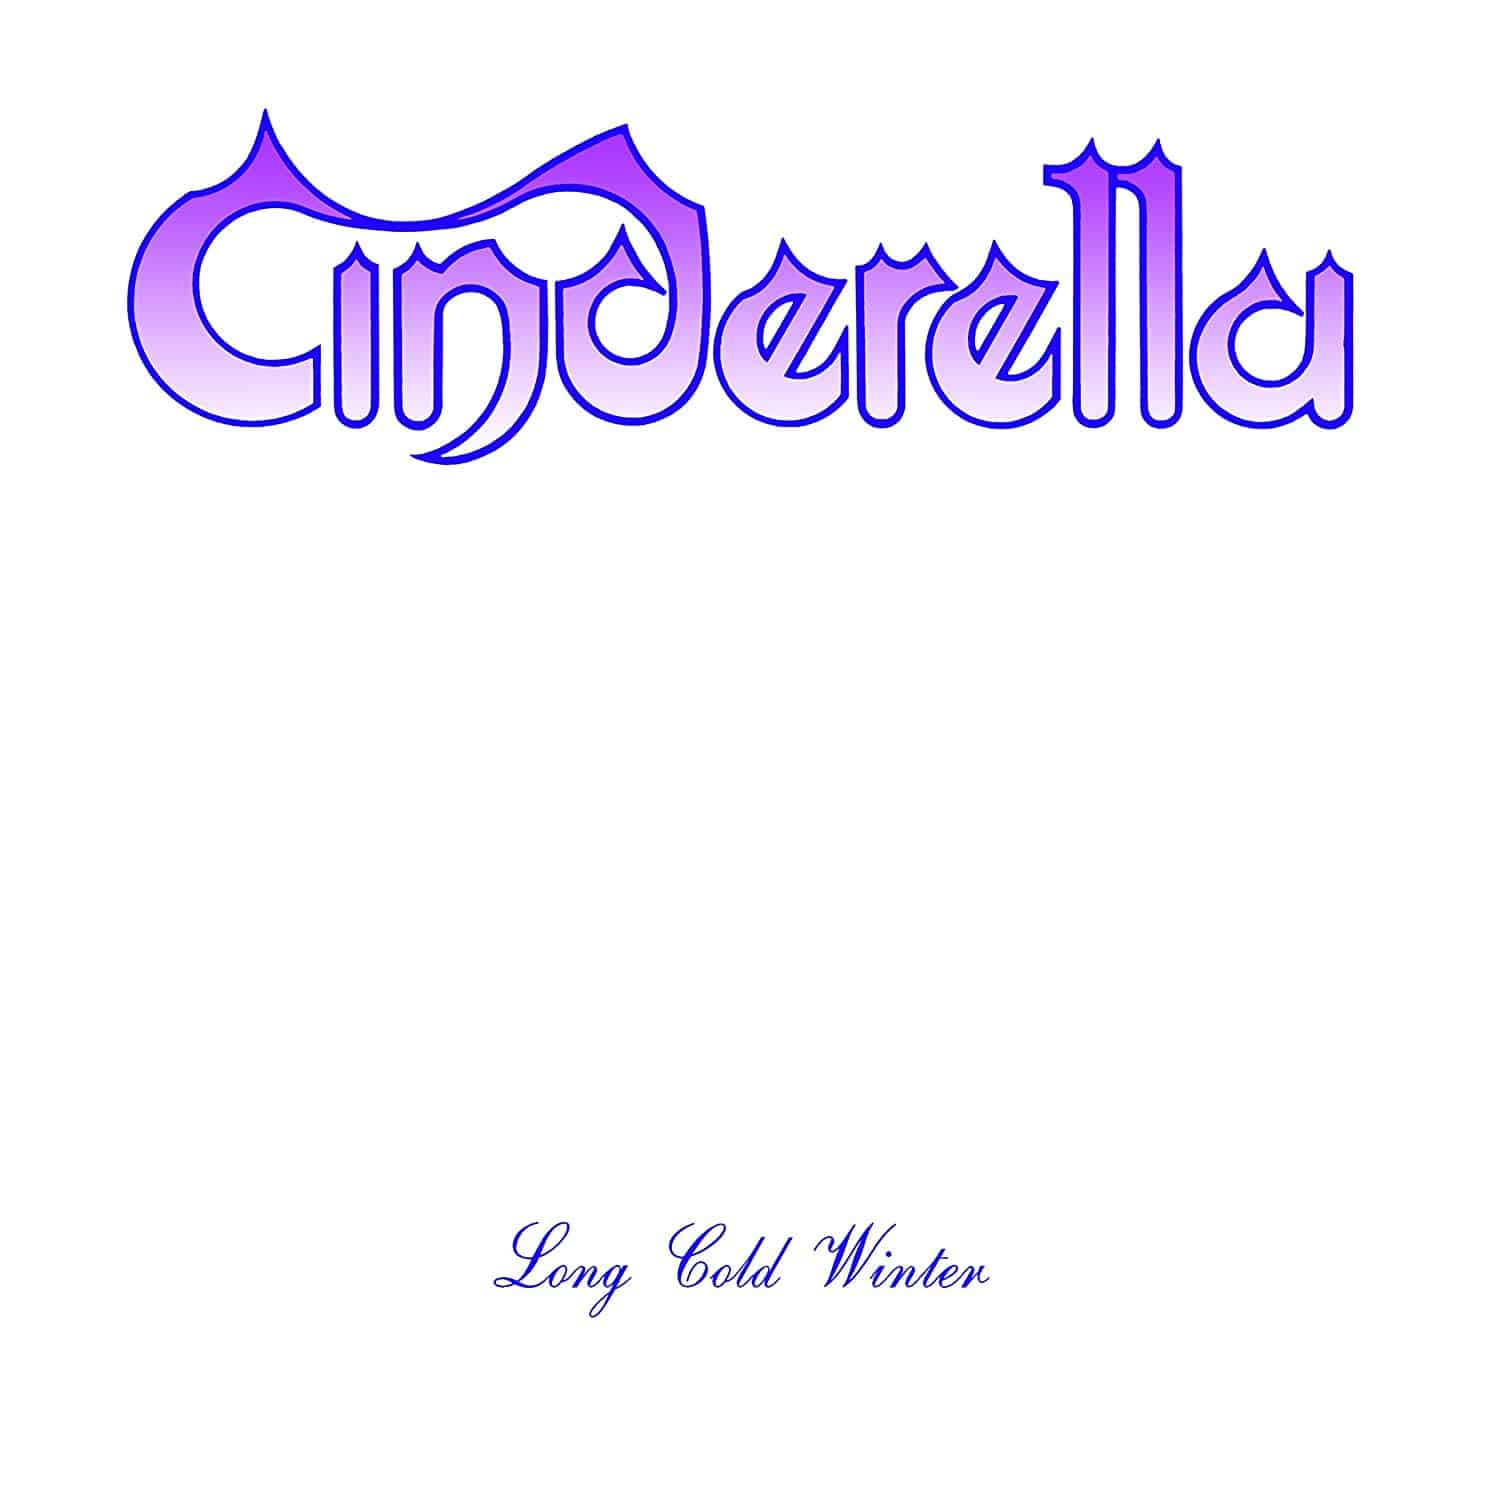 Cinderella Long Cold Winter LP